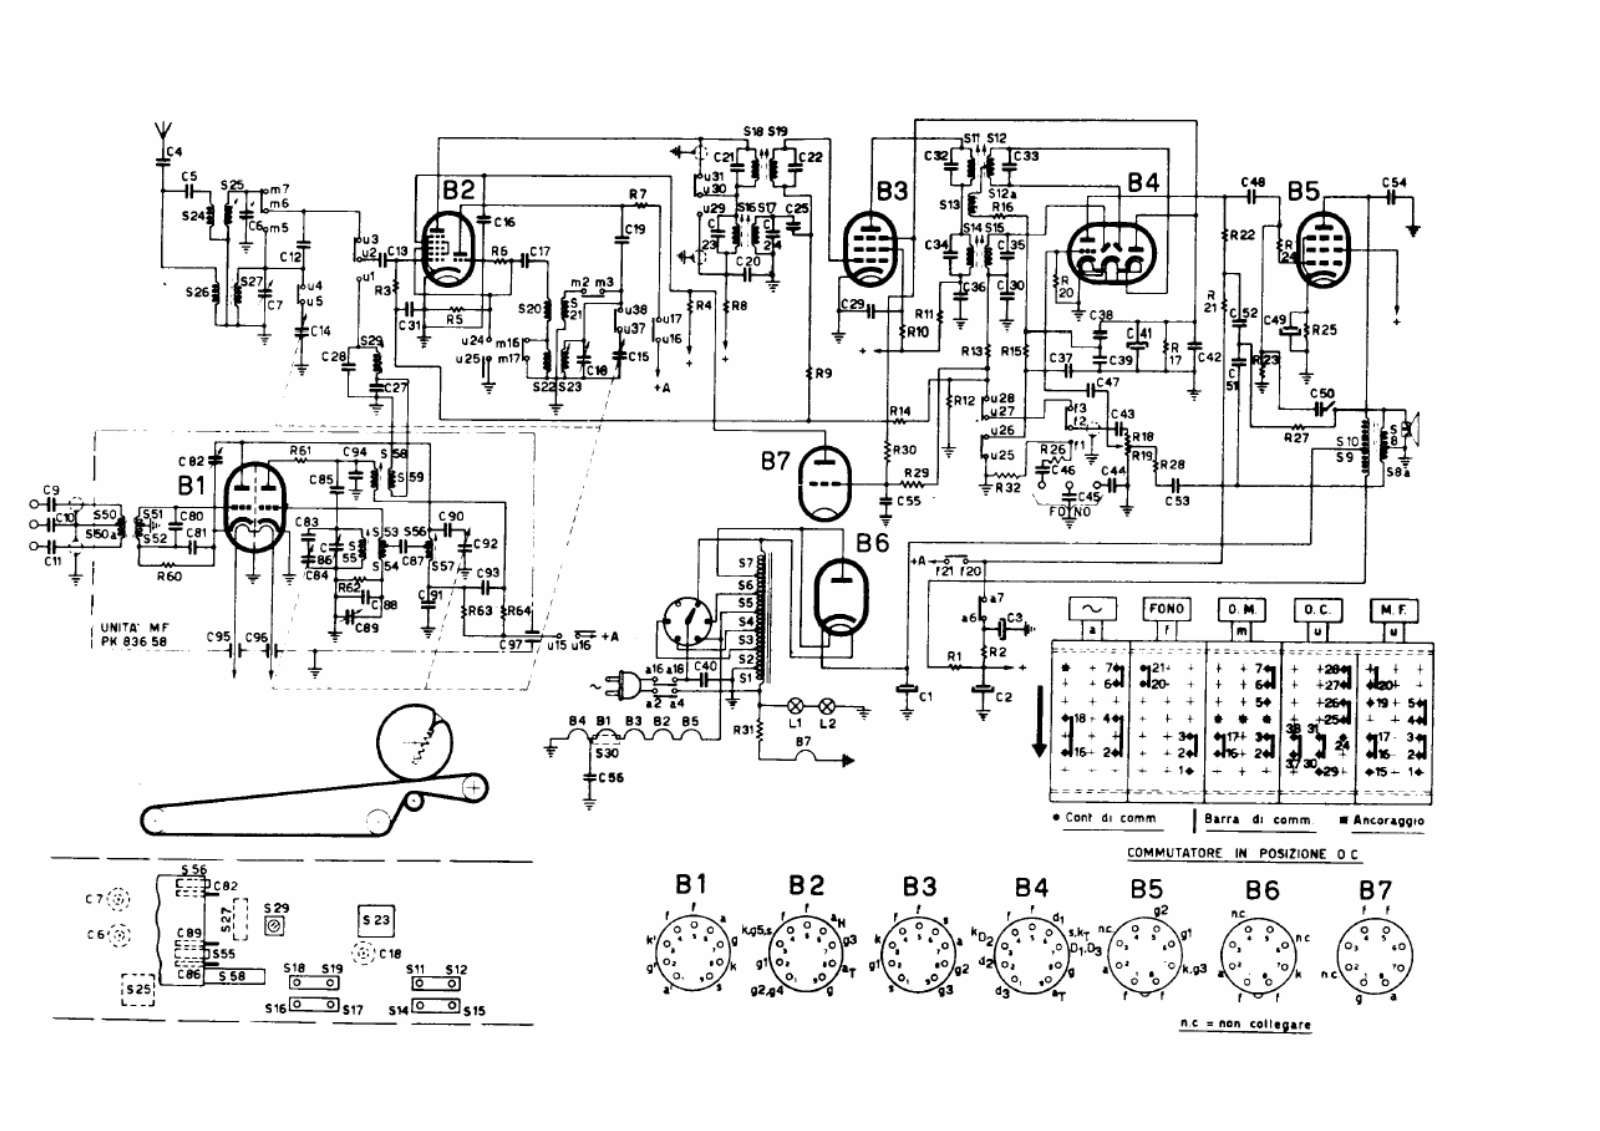 Philips bi380a schematic